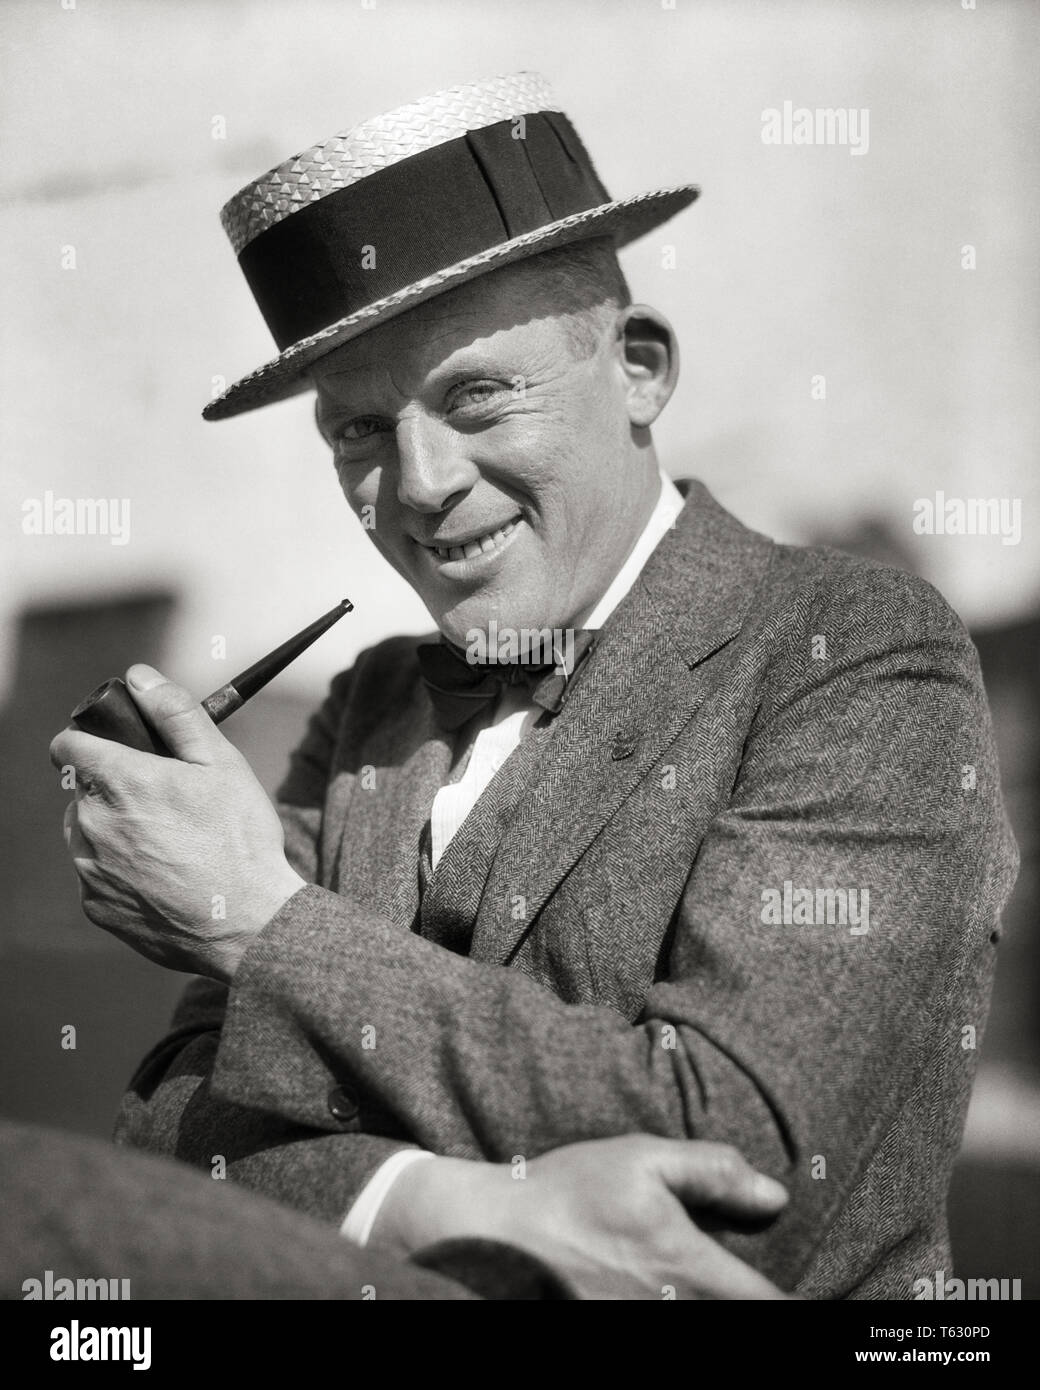 1920 PORTRAIT SMILING MAN fumant une pipe portant un chapeau en paille  CHAPEAU STYLE CRAVATE COSTUME LOOKING AT CAMERA - t380 HAR001 HARS JOIE  SATISFACTION DE VIE ESPACE COPIE TUYAU PERSONNES DEMI-LONGUEUR